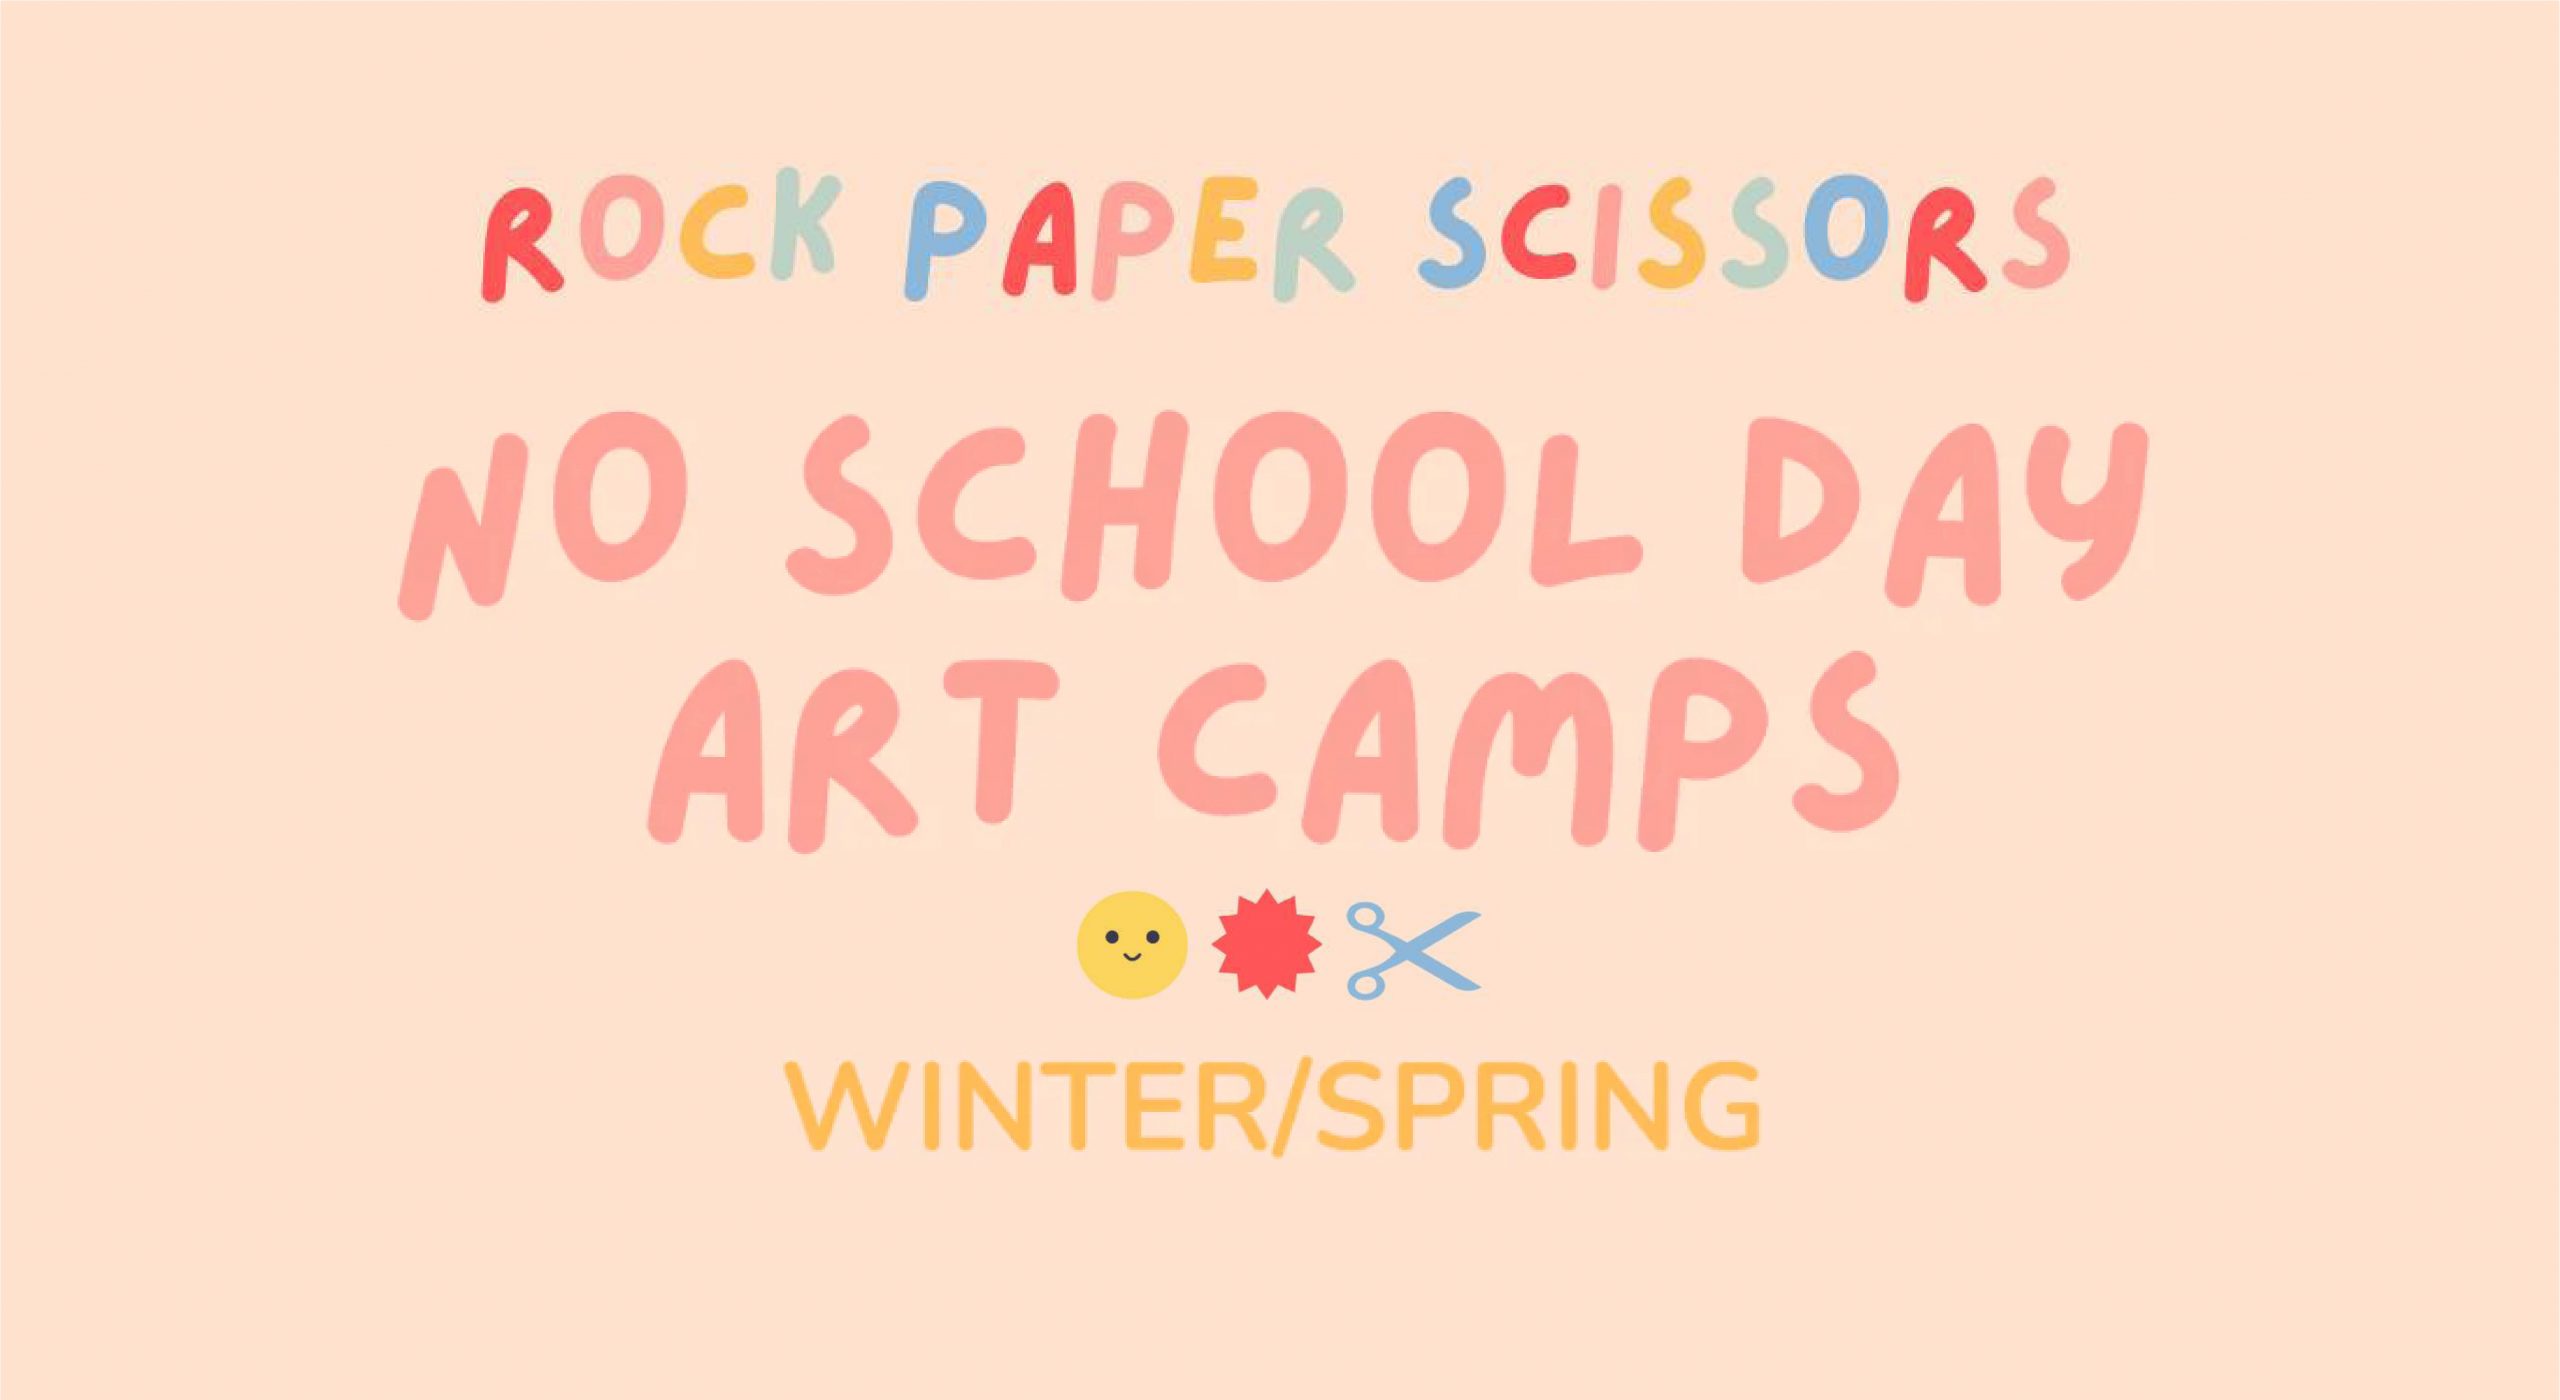 Rock paper scissors no school day art camps winterspring.